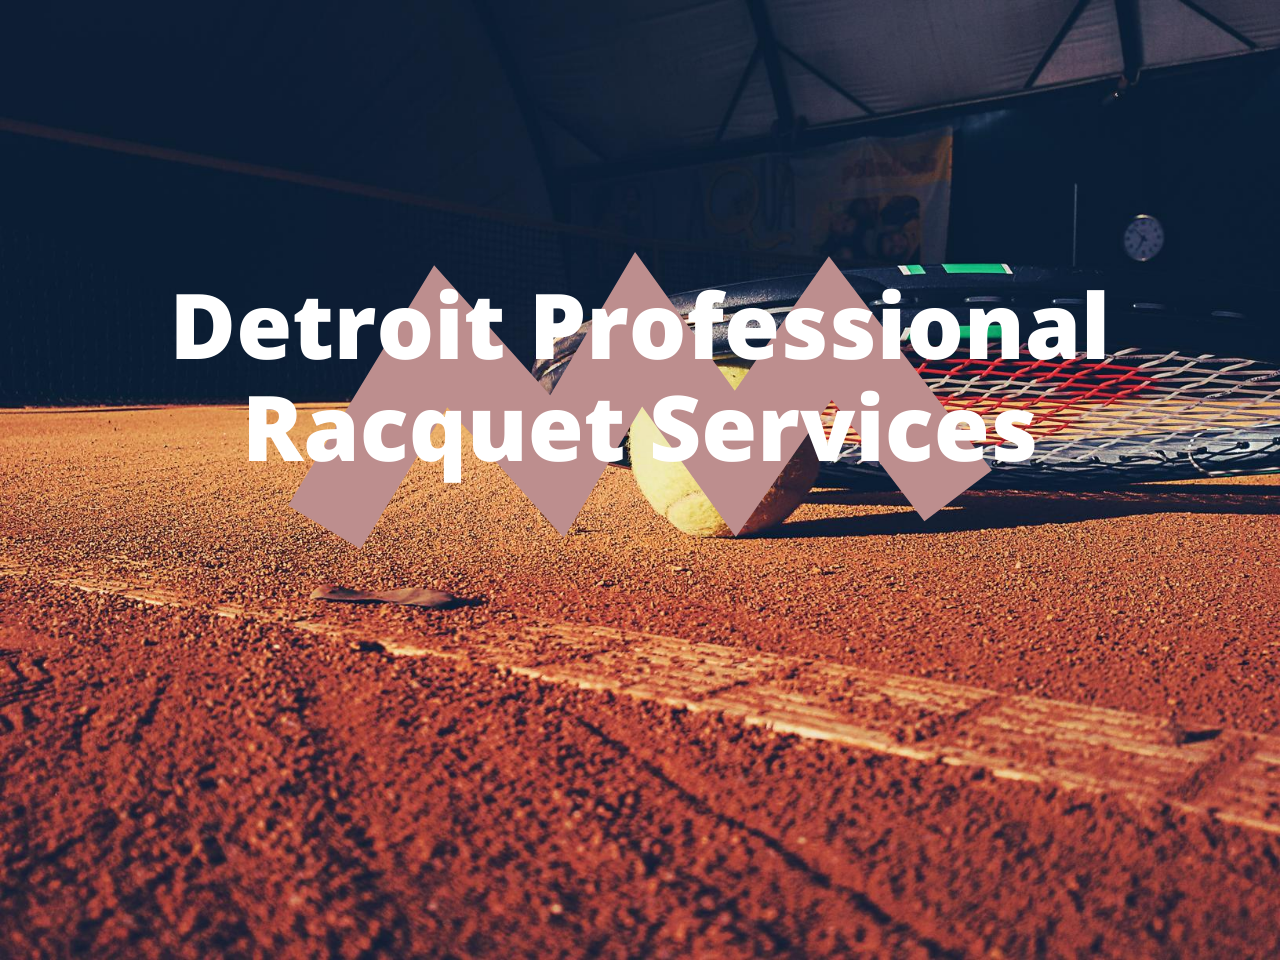 Detroit Professional Racquet Services